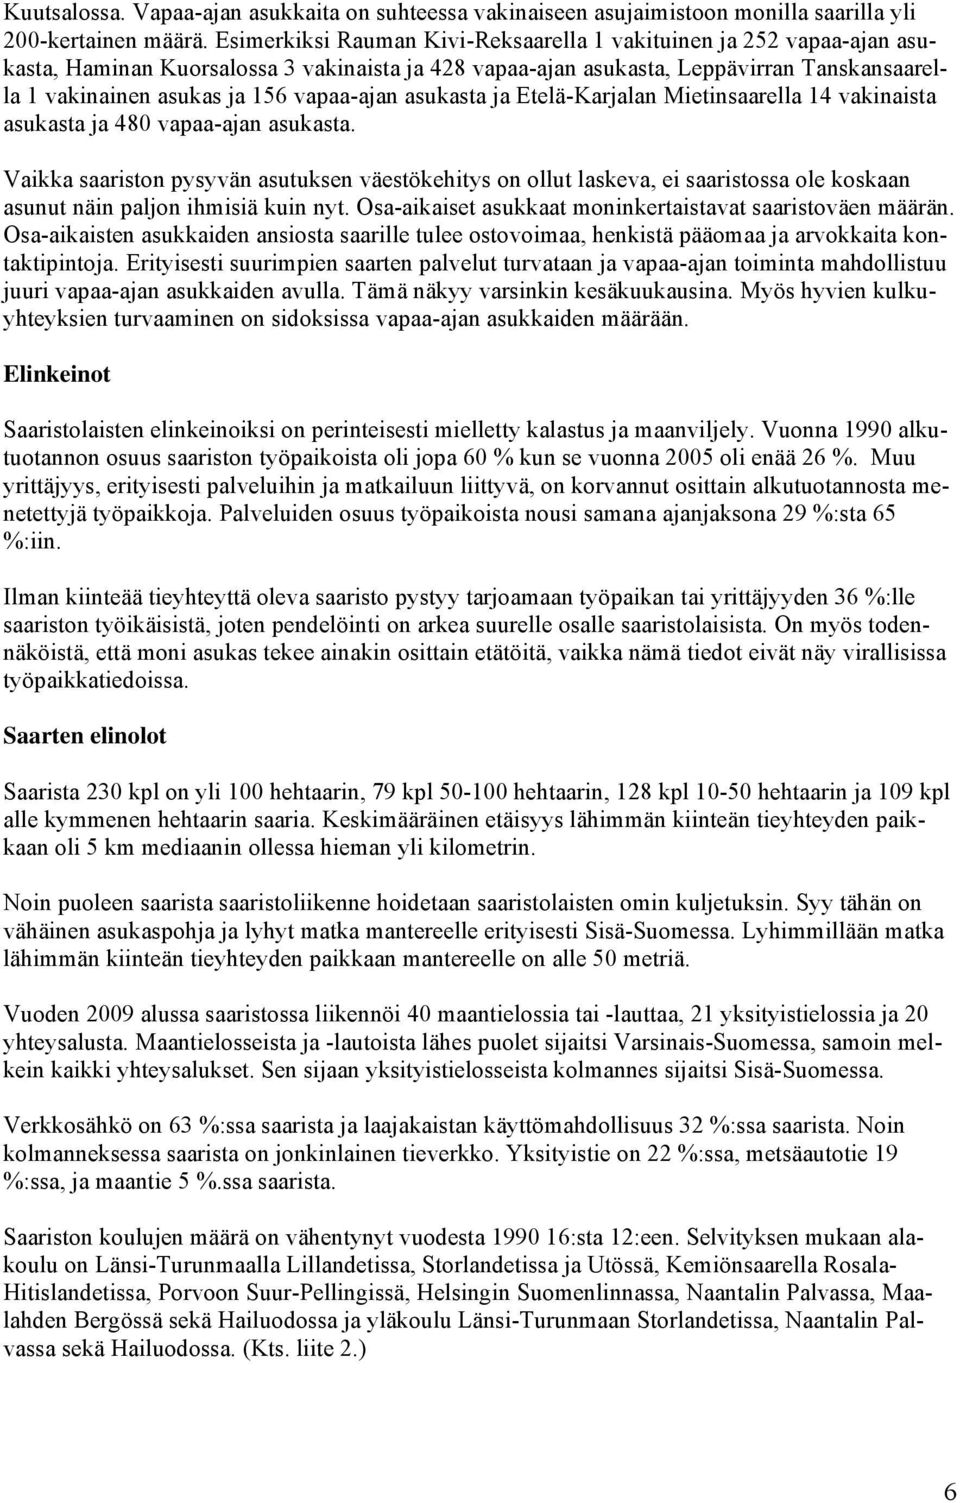 vapaa-ajan asukasta ja Etelä-Karjalan Mietinsaarella 14 vakinaista asukasta ja 480 vapaa-ajan asukasta.